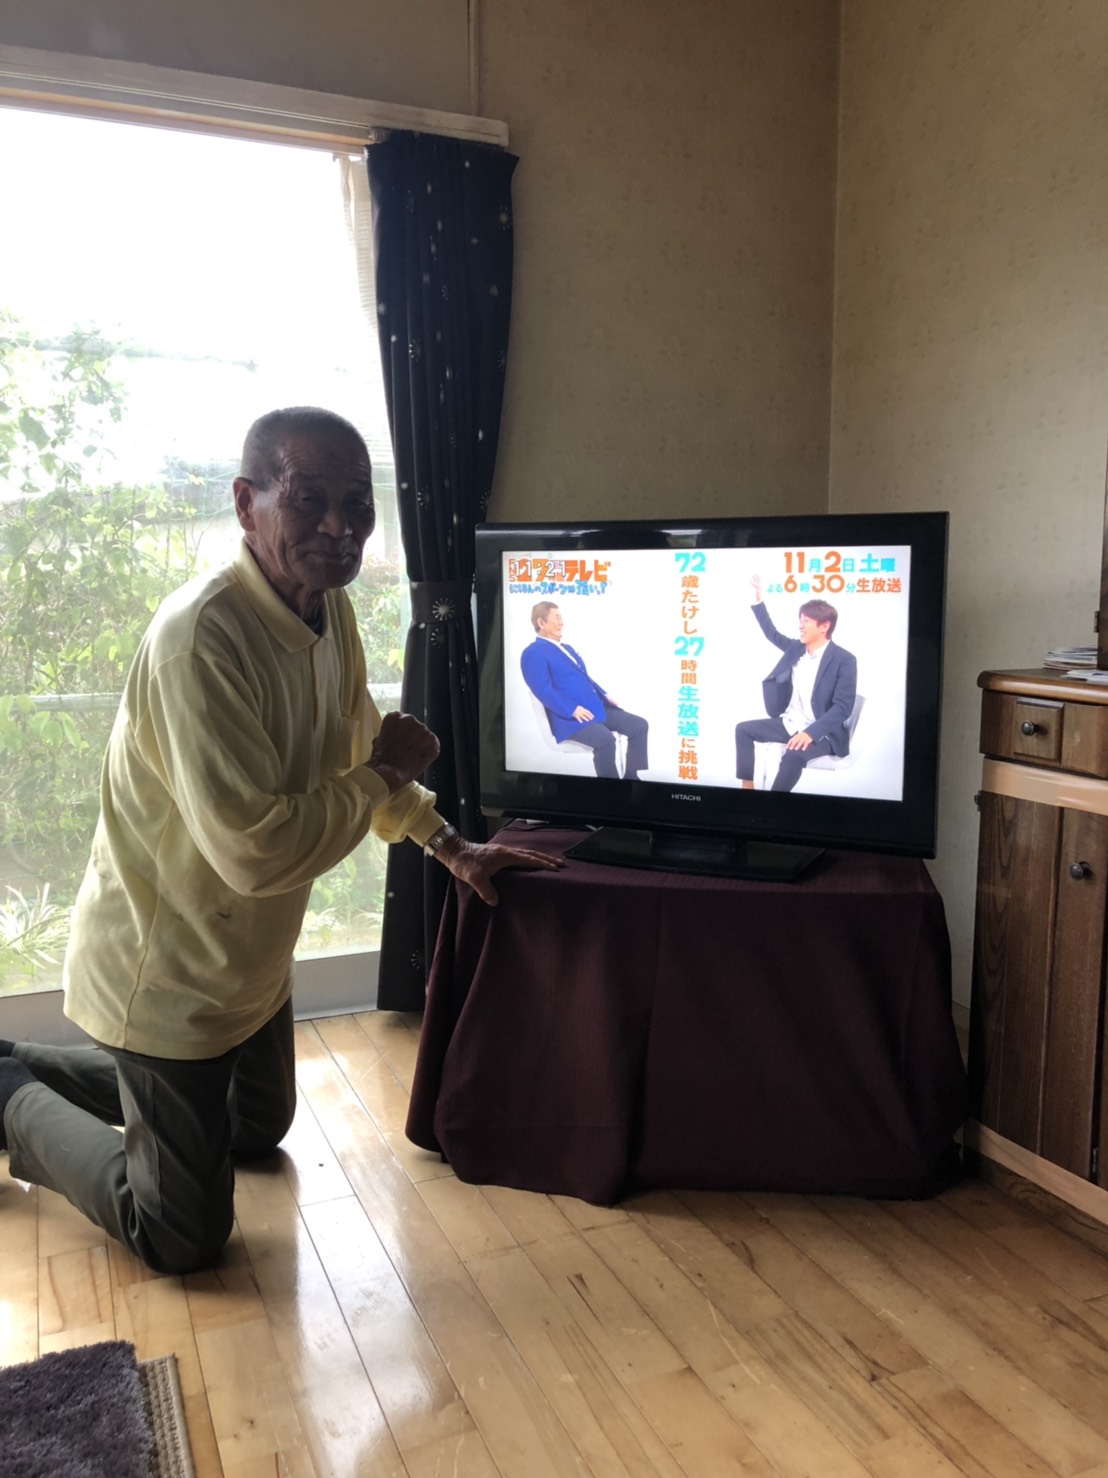 テレビ横で立膝姿の男性